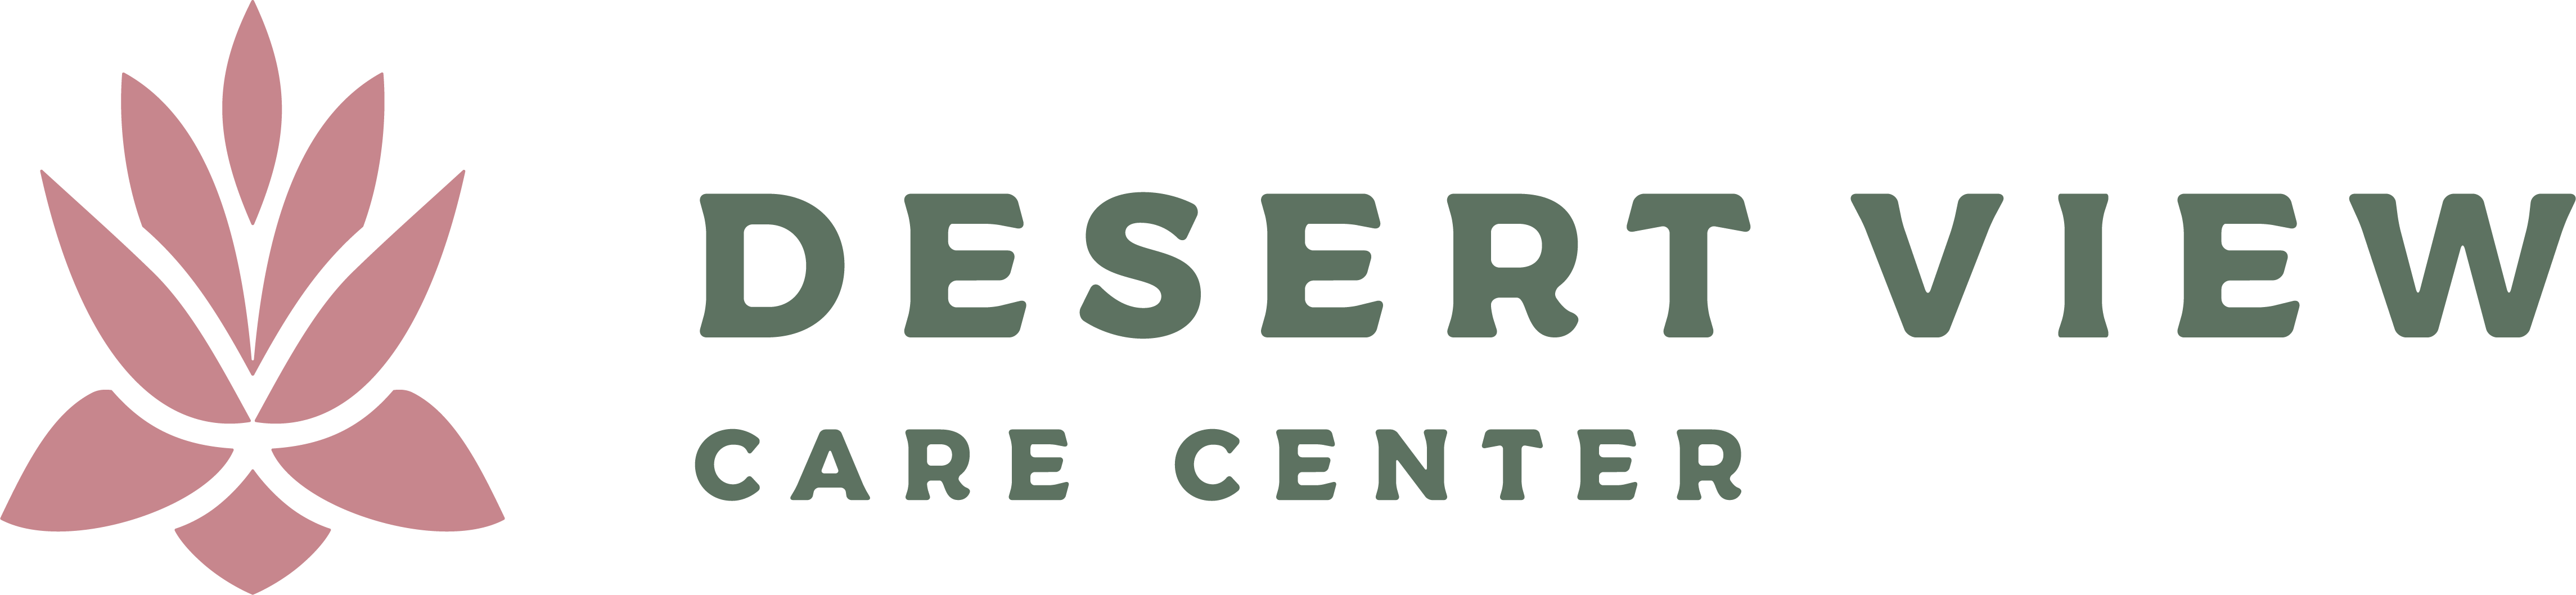 Desert View Care Center